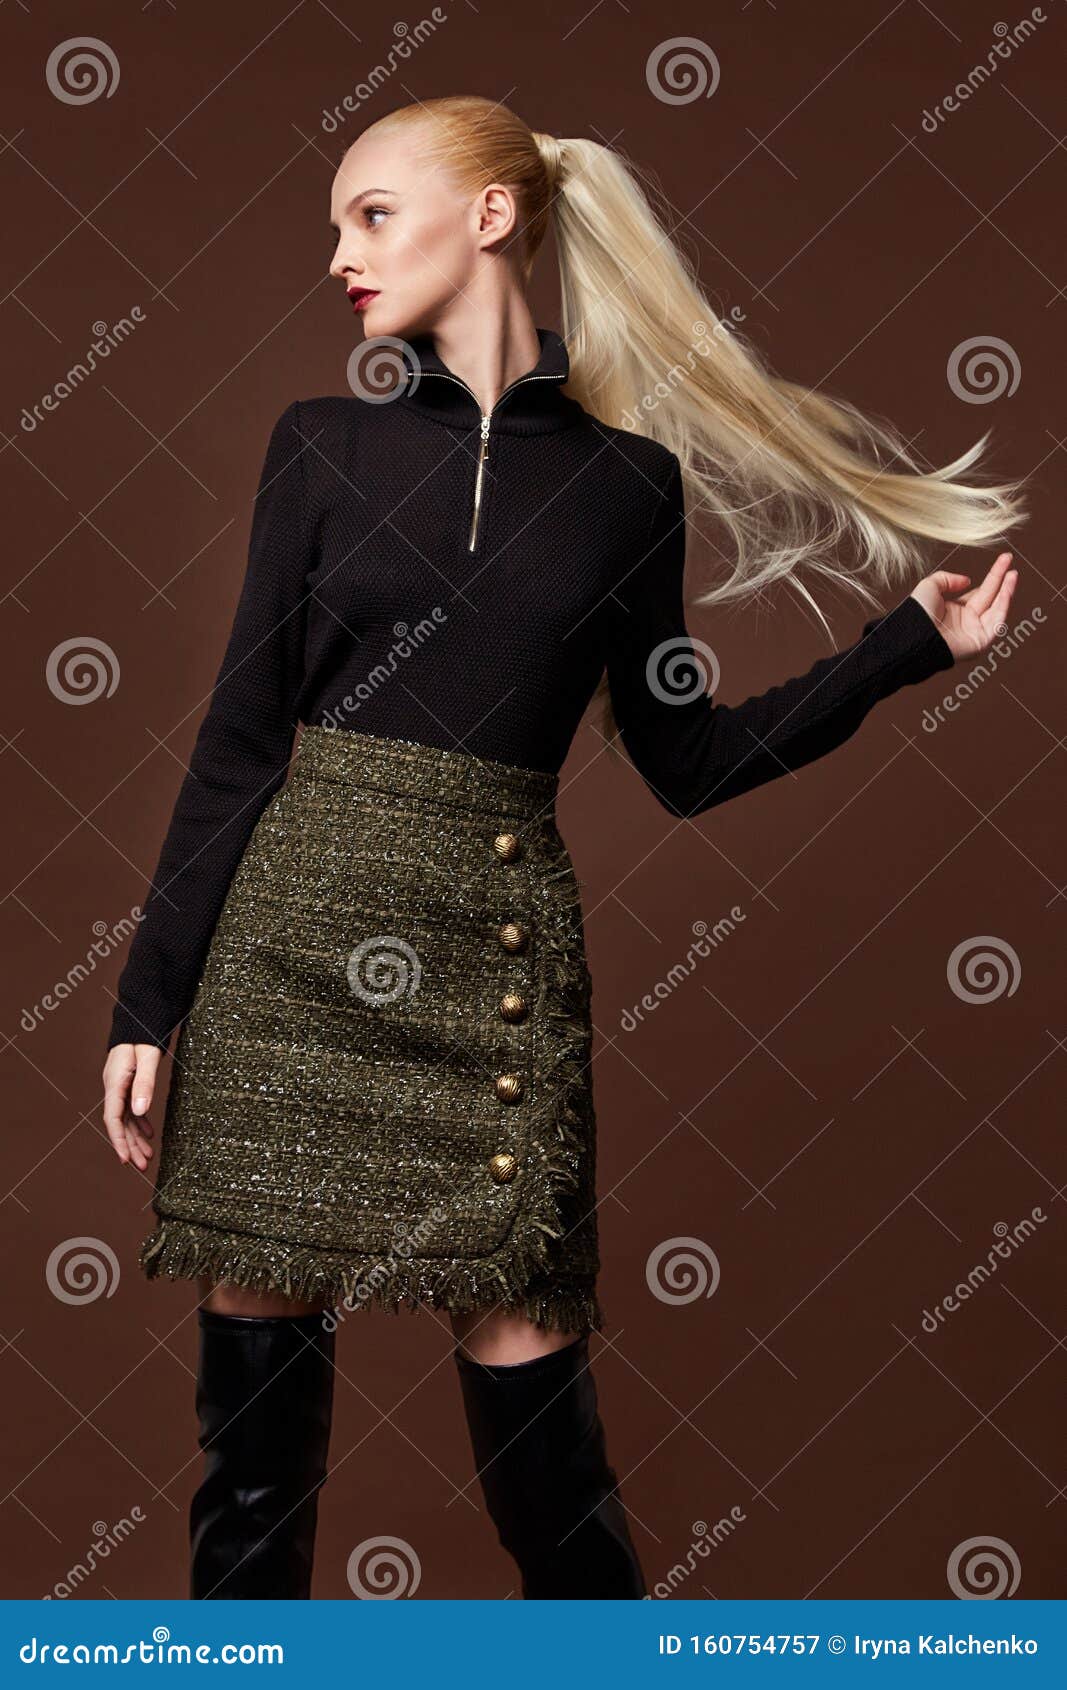 Mujer Guapa Sexy Falda Blusa Disfraz Casual Colección De Ropa Catálogo Larga Pelo Rubio Modelo De Fiesta De La Pose Imagen de archivo - Imagen de pelo, forma: 160754757